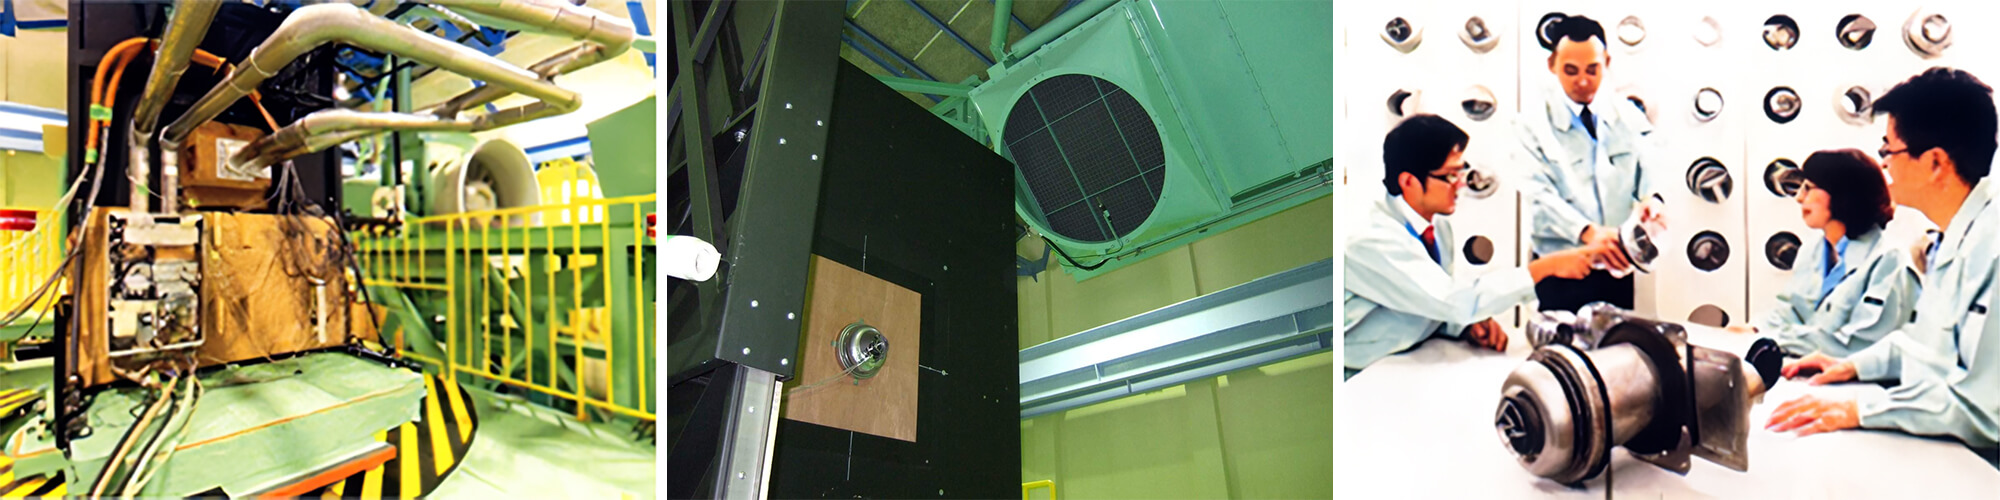 耐風試験装置を有する「送風実験室」